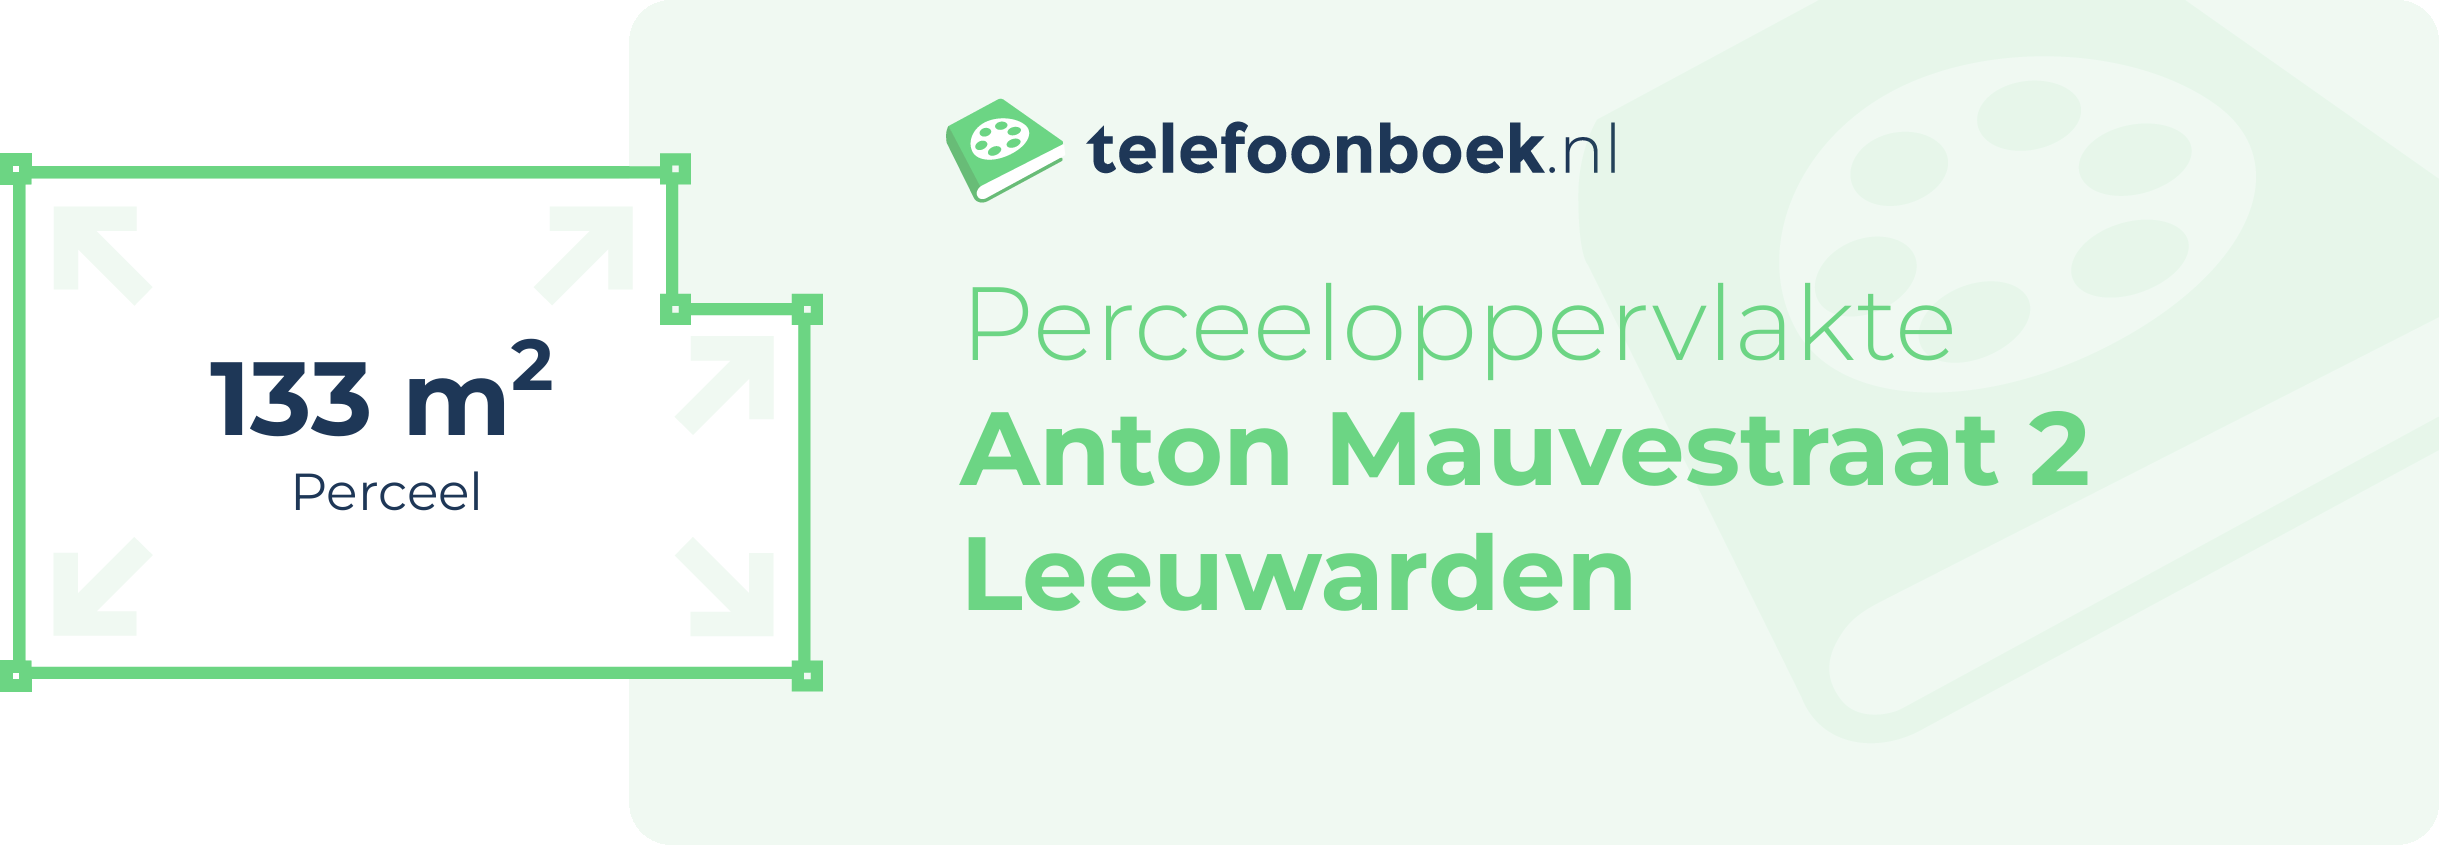 Perceeloppervlakte Anton Mauvestraat 2 Leeuwarden